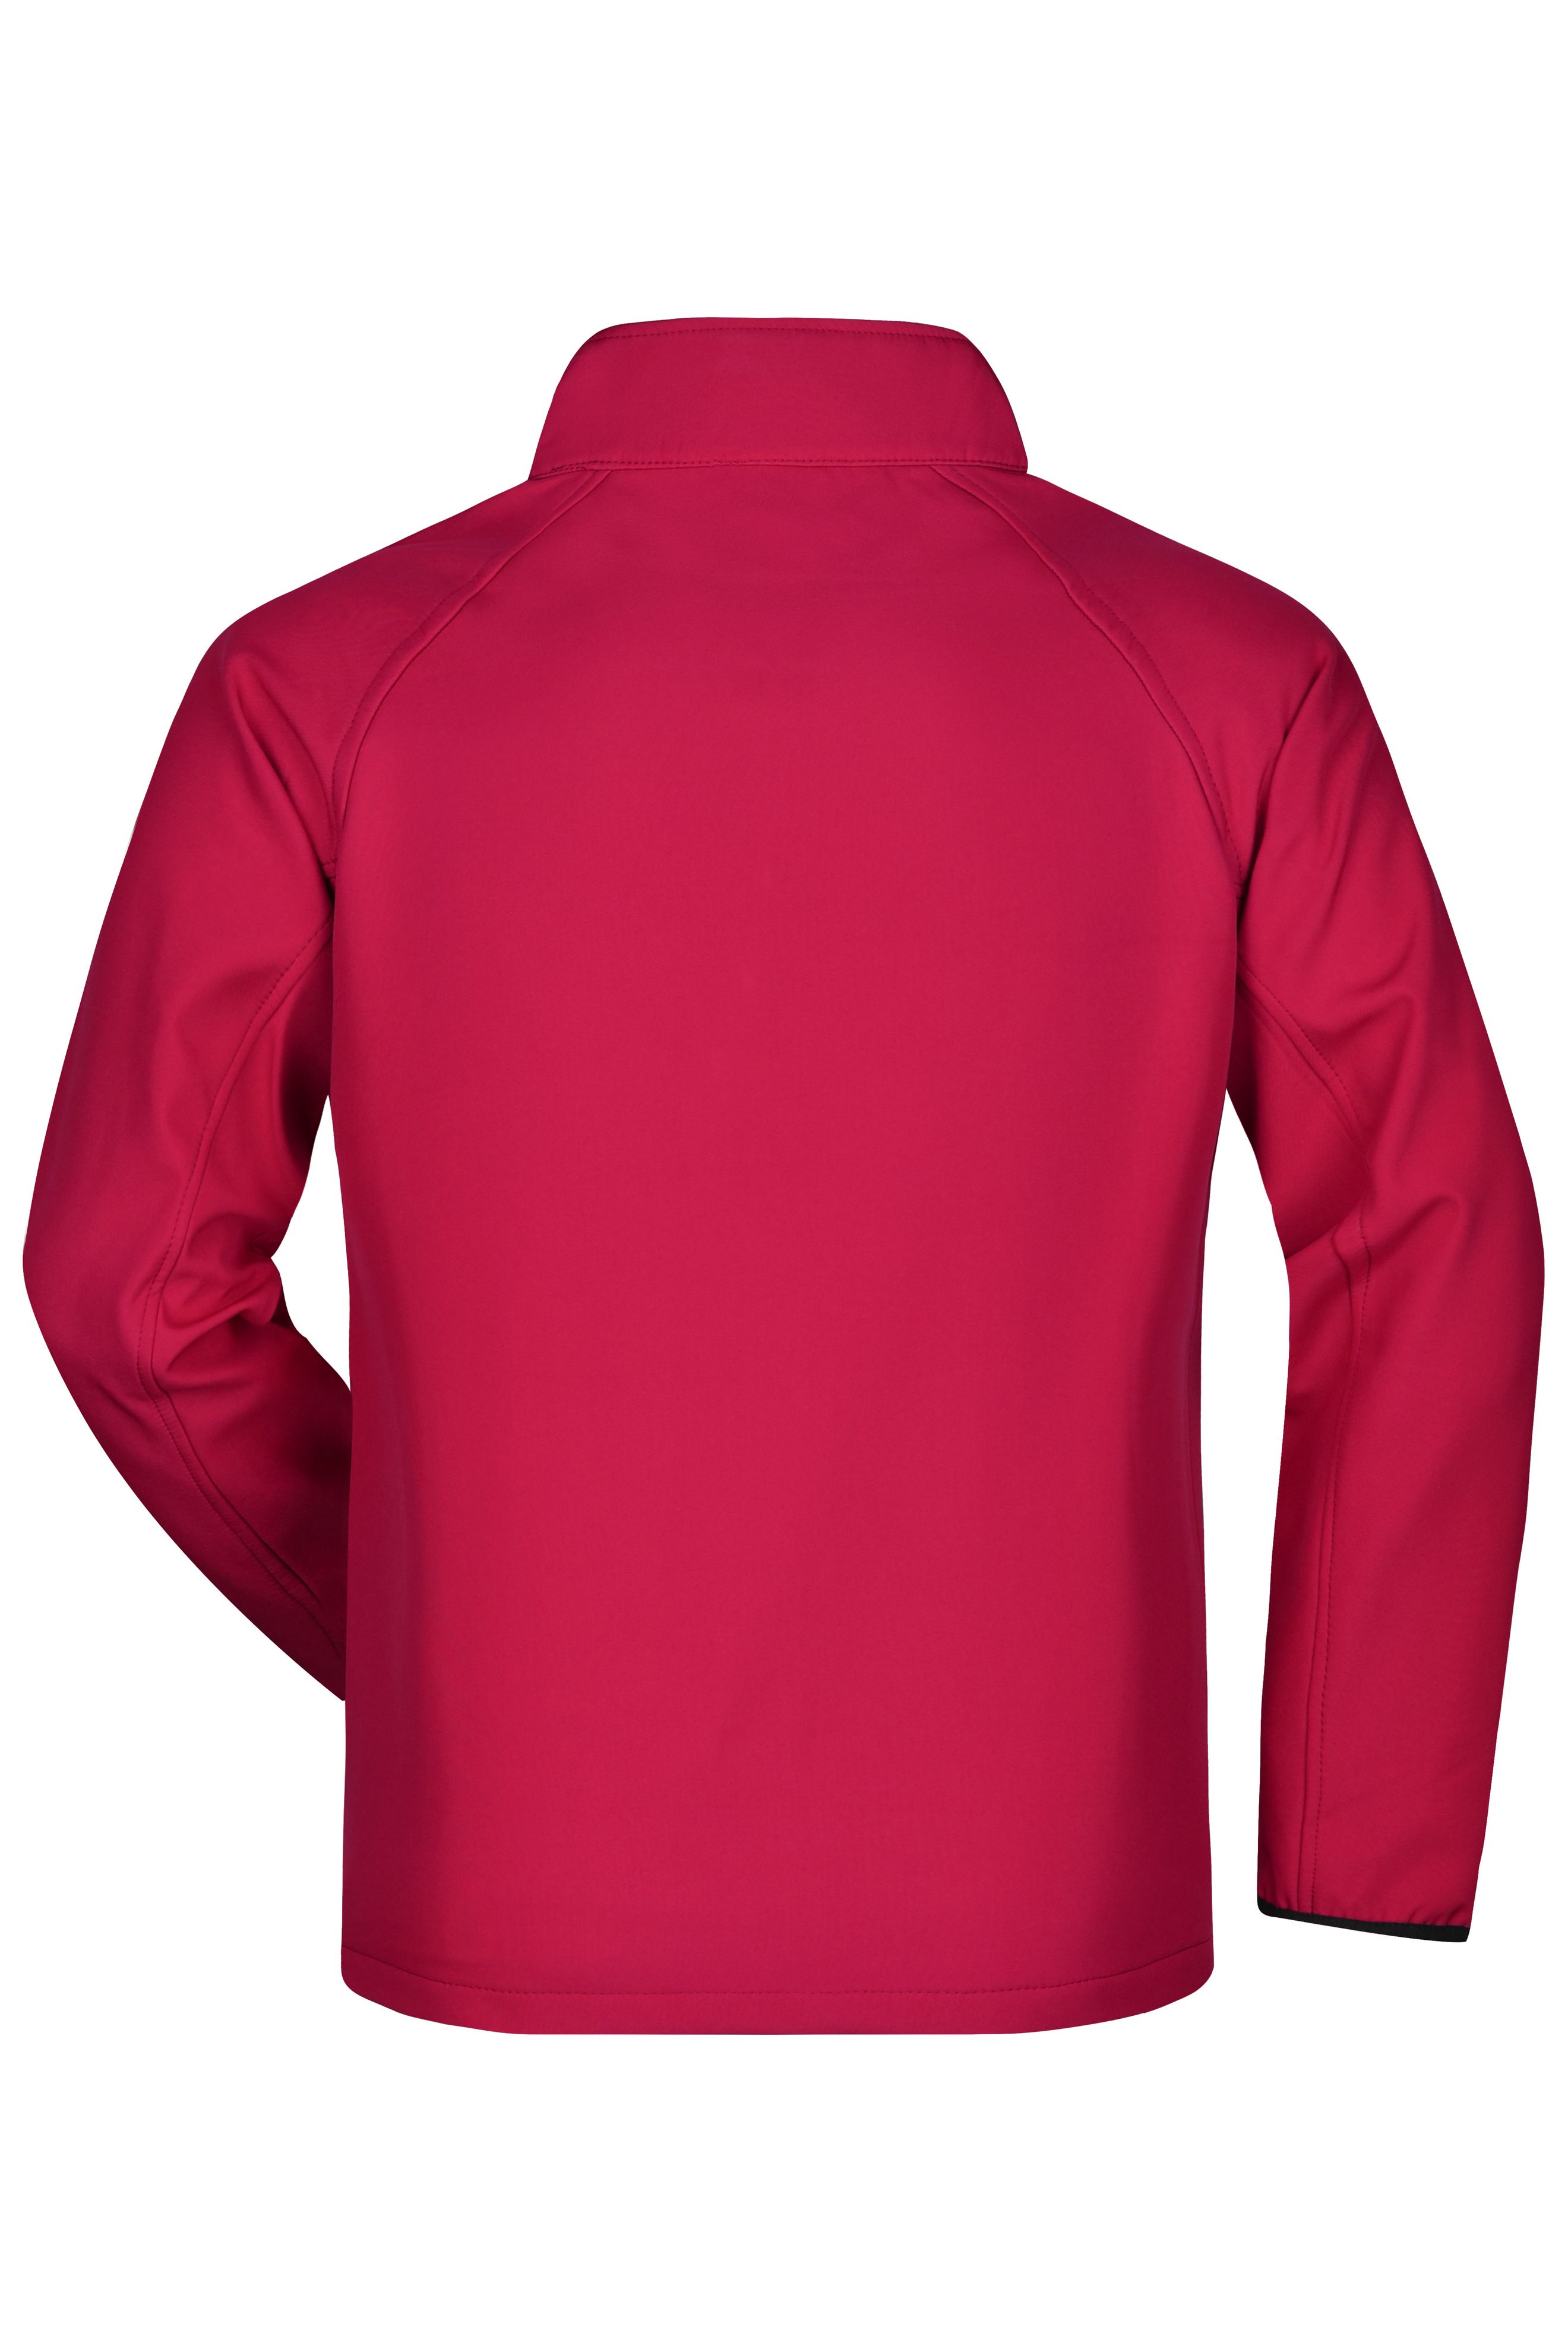 Men Men's Promo Softshell Jacket Red/black-Daiber